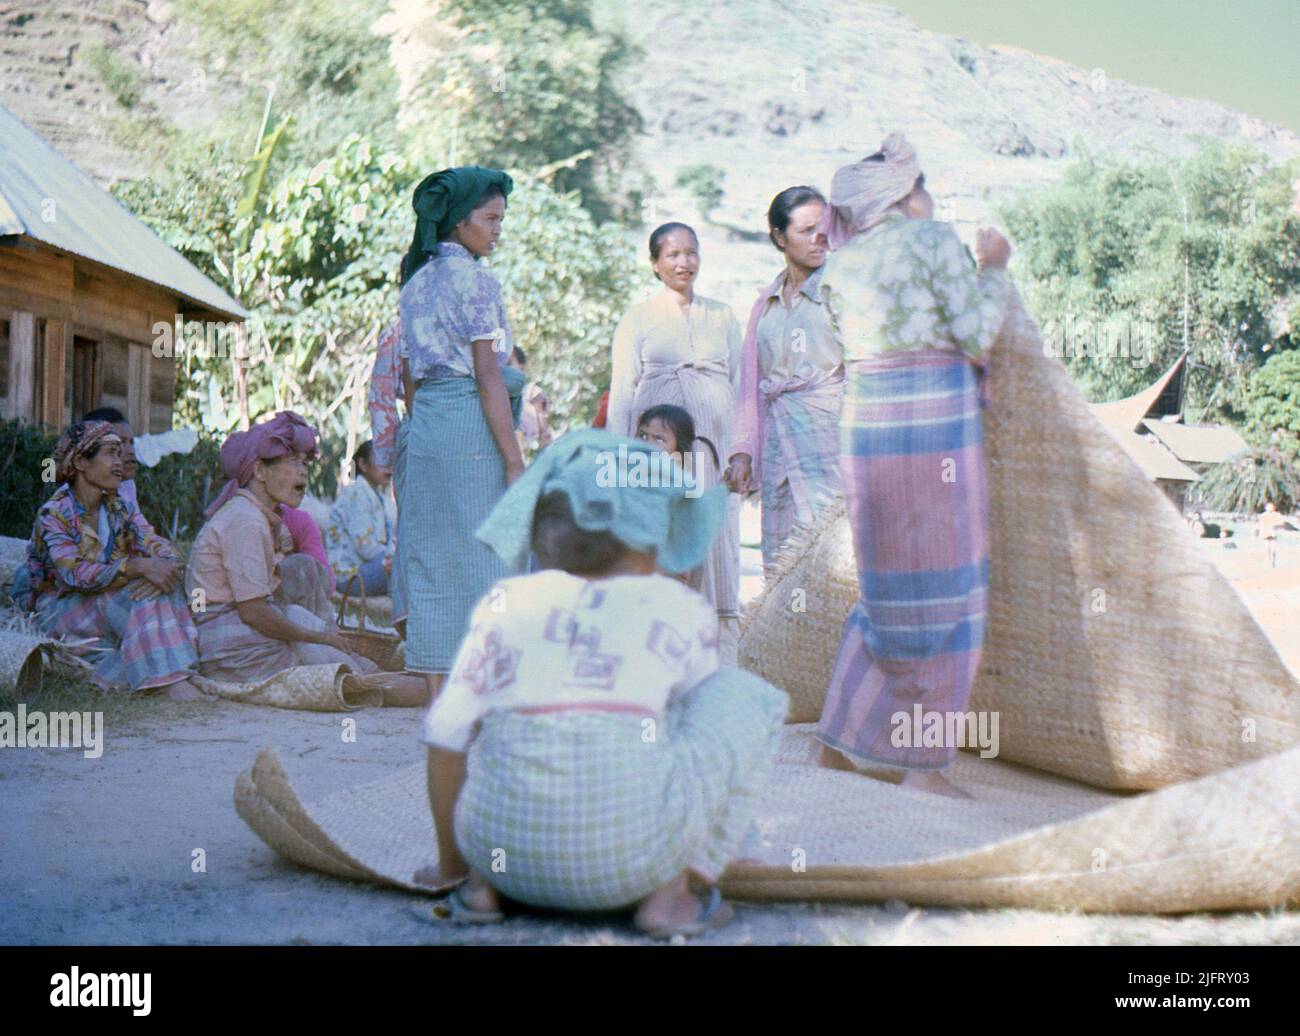 Sumatra, circa.1970. A group of local Batak women selling hand-woven mats at a rural market near Lake Toba. Stock Photo